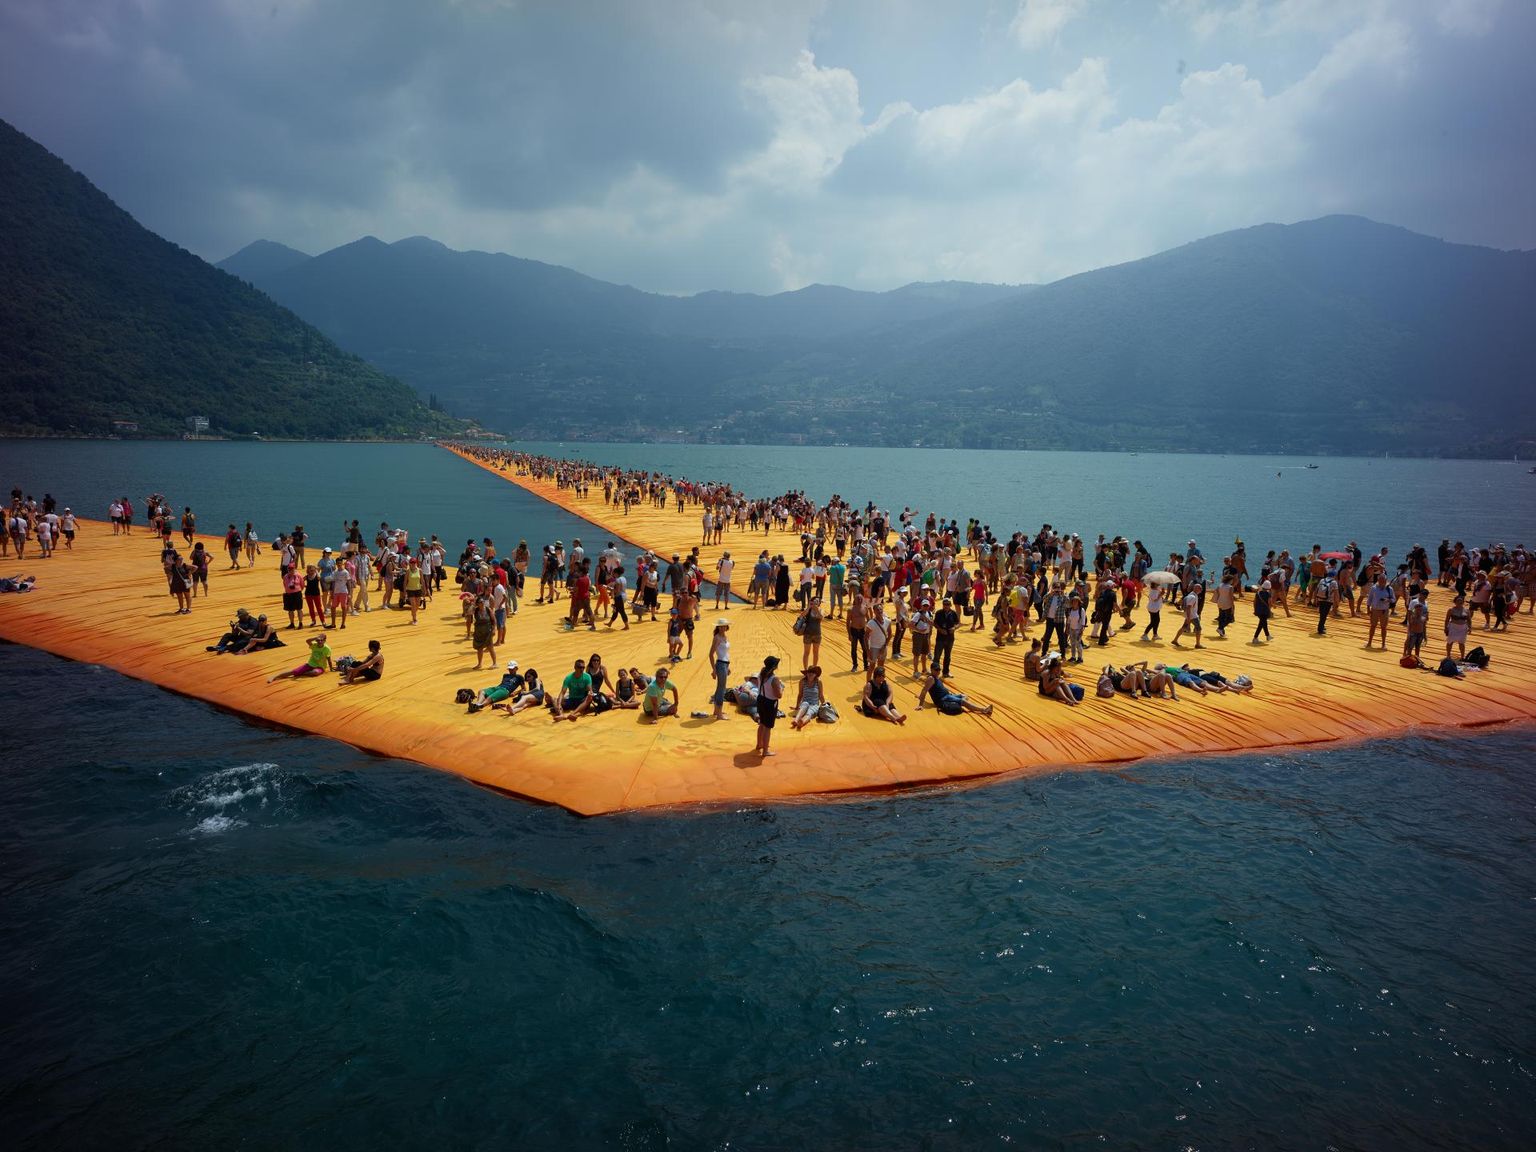 Film «Vee peal kõndides» linastub 21. juulil kell 18 Kondase keskuses. Legendaarse kunstniku Christo mõttevälgatusel sünnib kuldne tee üle Iseo järve.